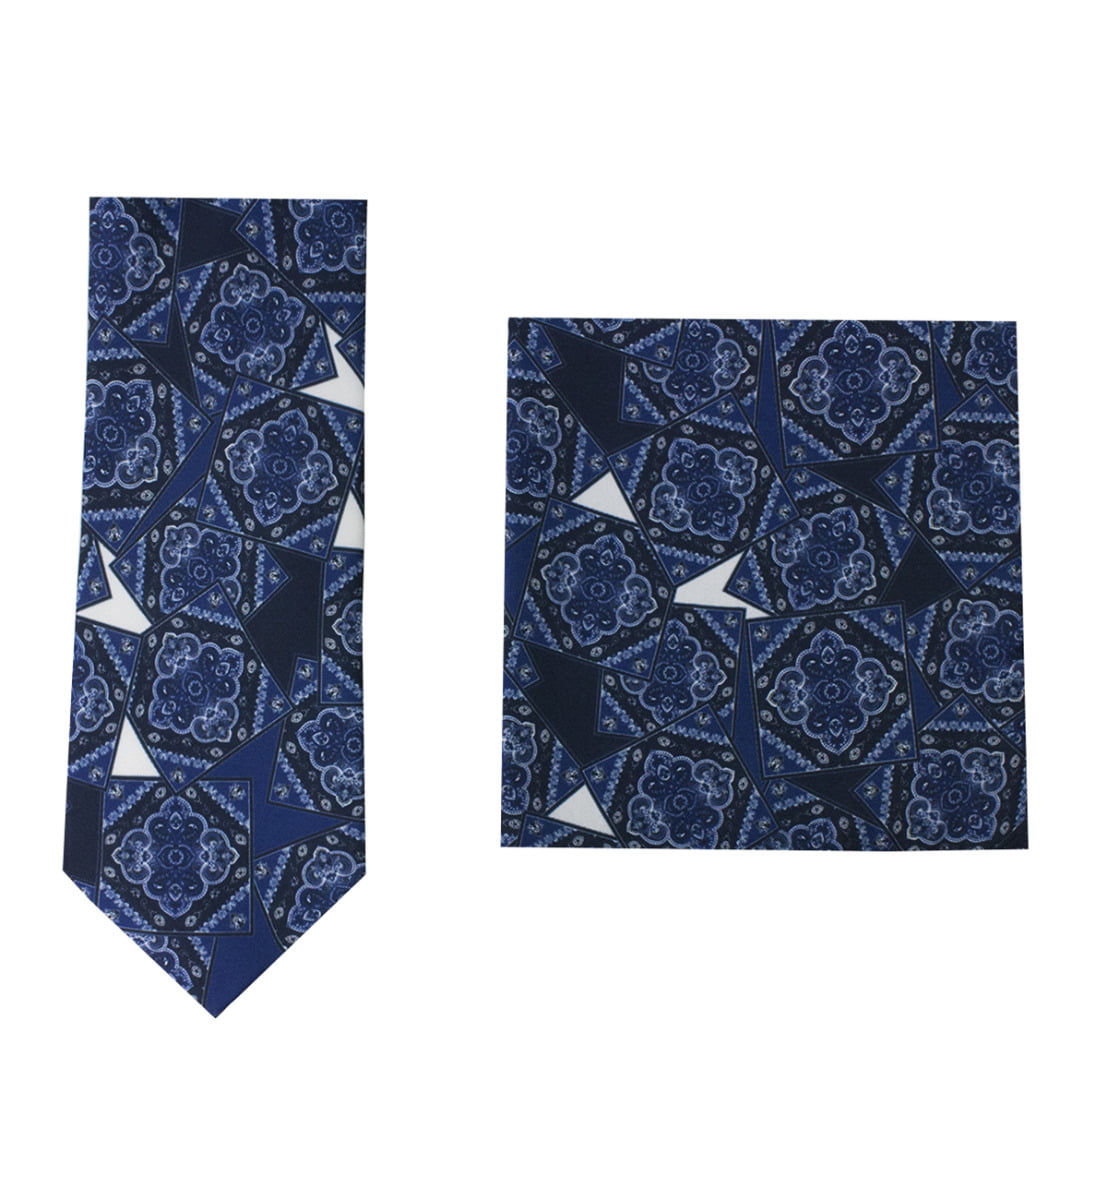 Cravatta uomo blu fantasia damascata bluette compresa di pochette abbinata